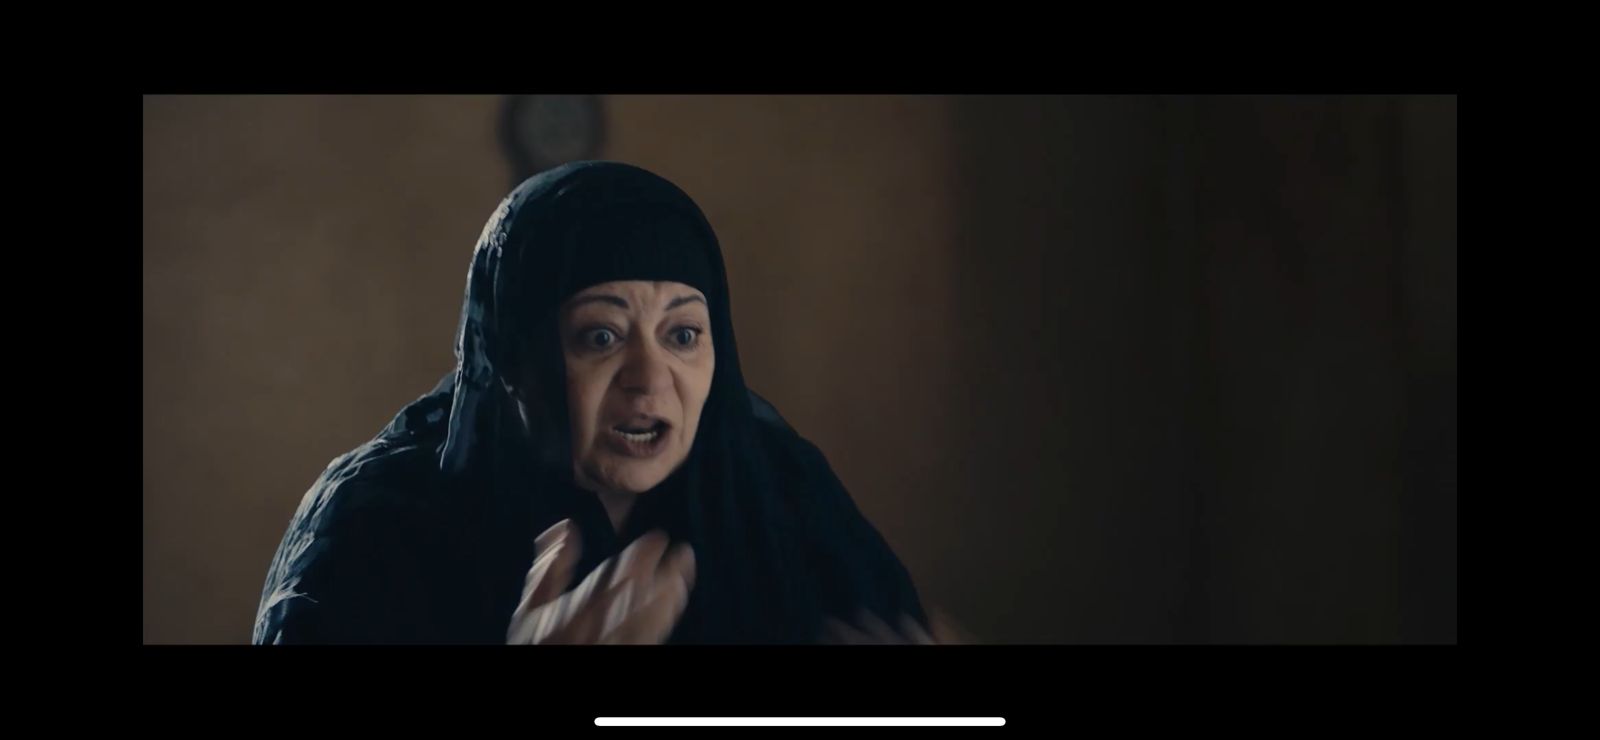 مسلسل عملة نادرة الحلقة 10  أحمد عيد يطعن نيللي كريم في شرفها بعدما علم بمقابلتها لرجل غريب (1)